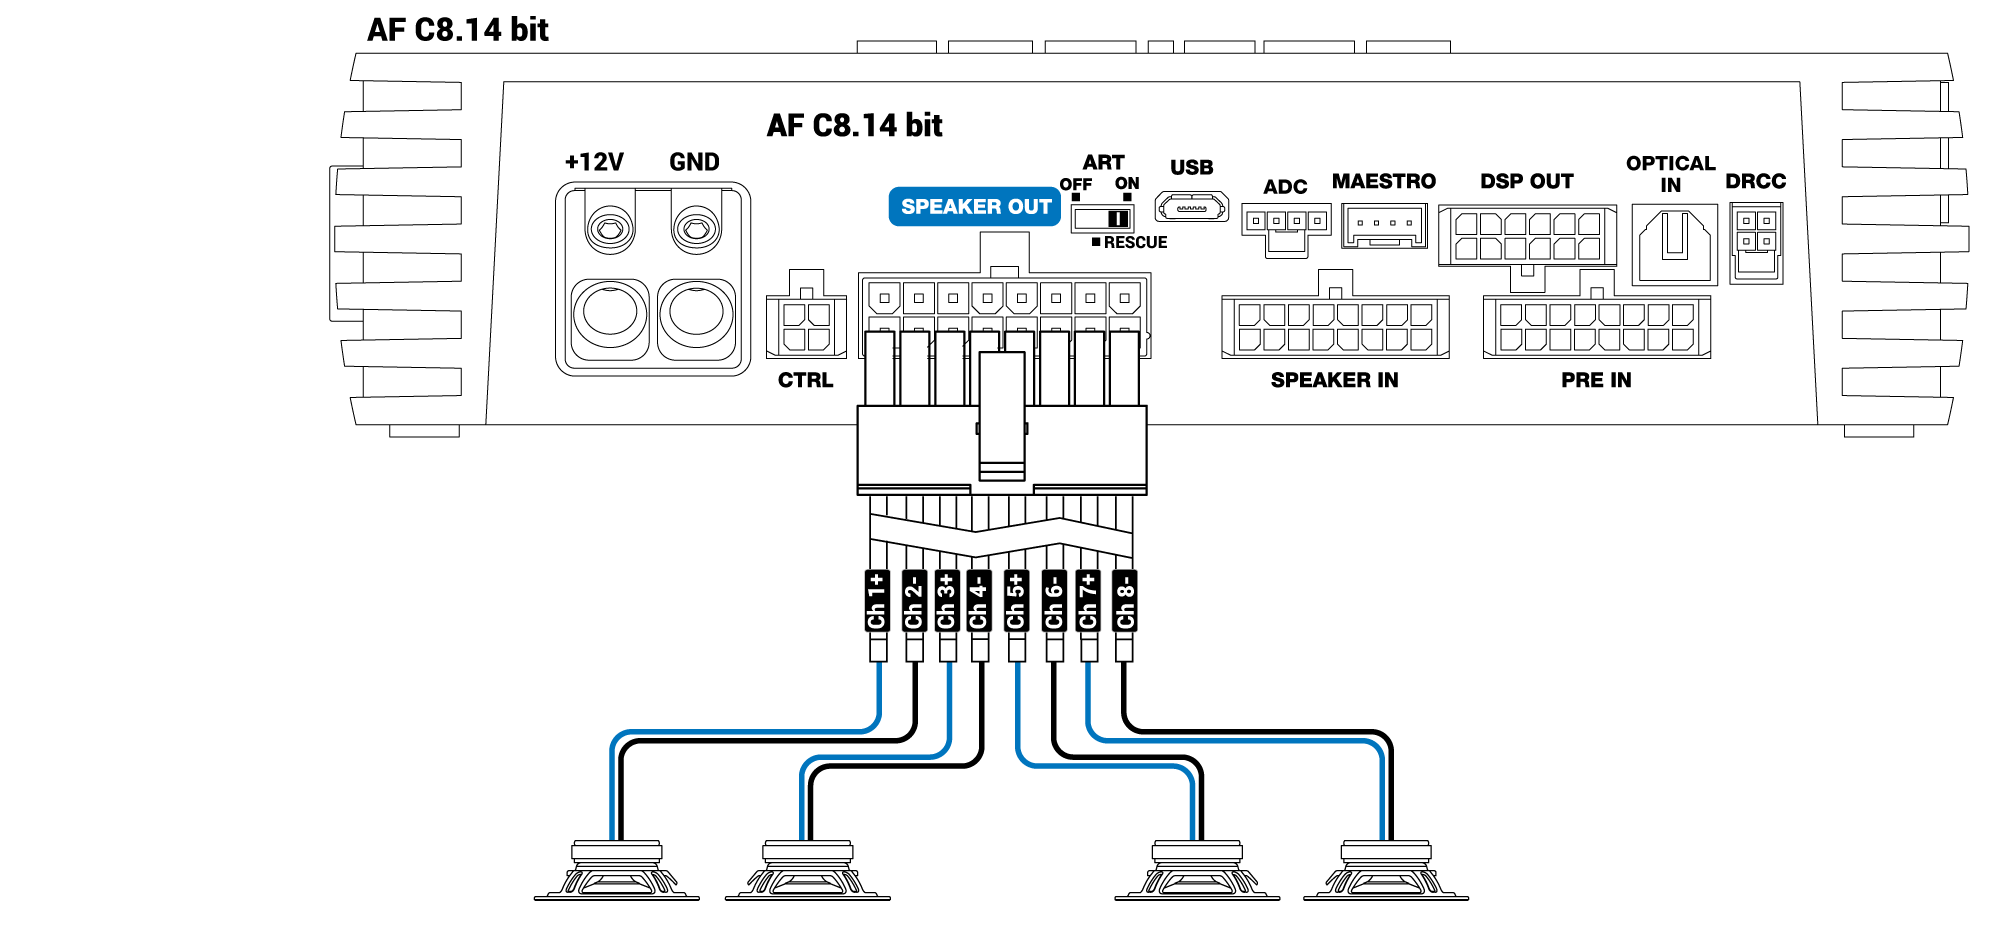 Speaker-out-BRIDGE-MODE-AF-C8.14-bit.png